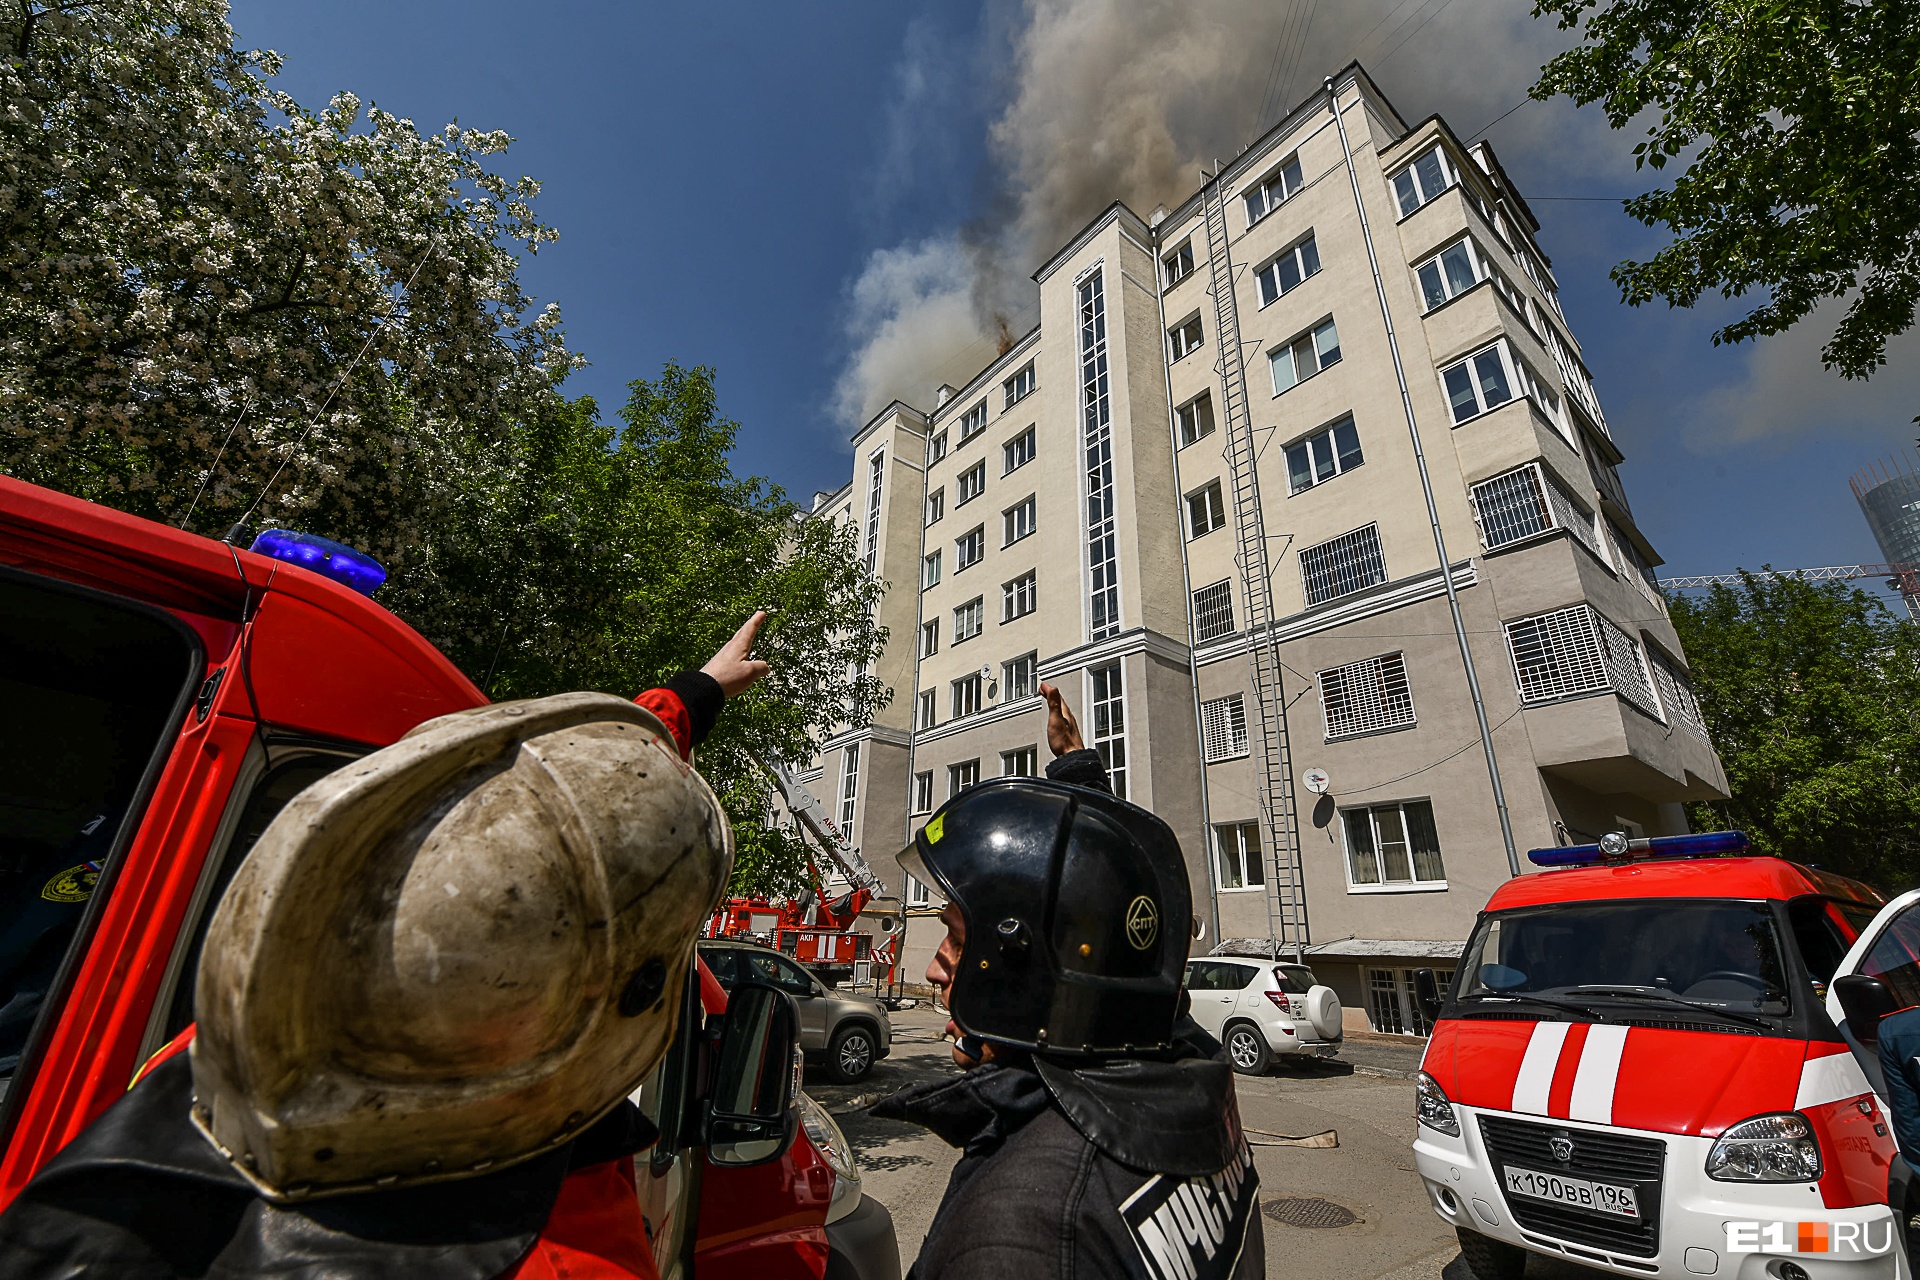 Спасенные животные, сгоревшая крыша, бессилие жильцов: главные фотографии с пожара в центре Екатеринбурга